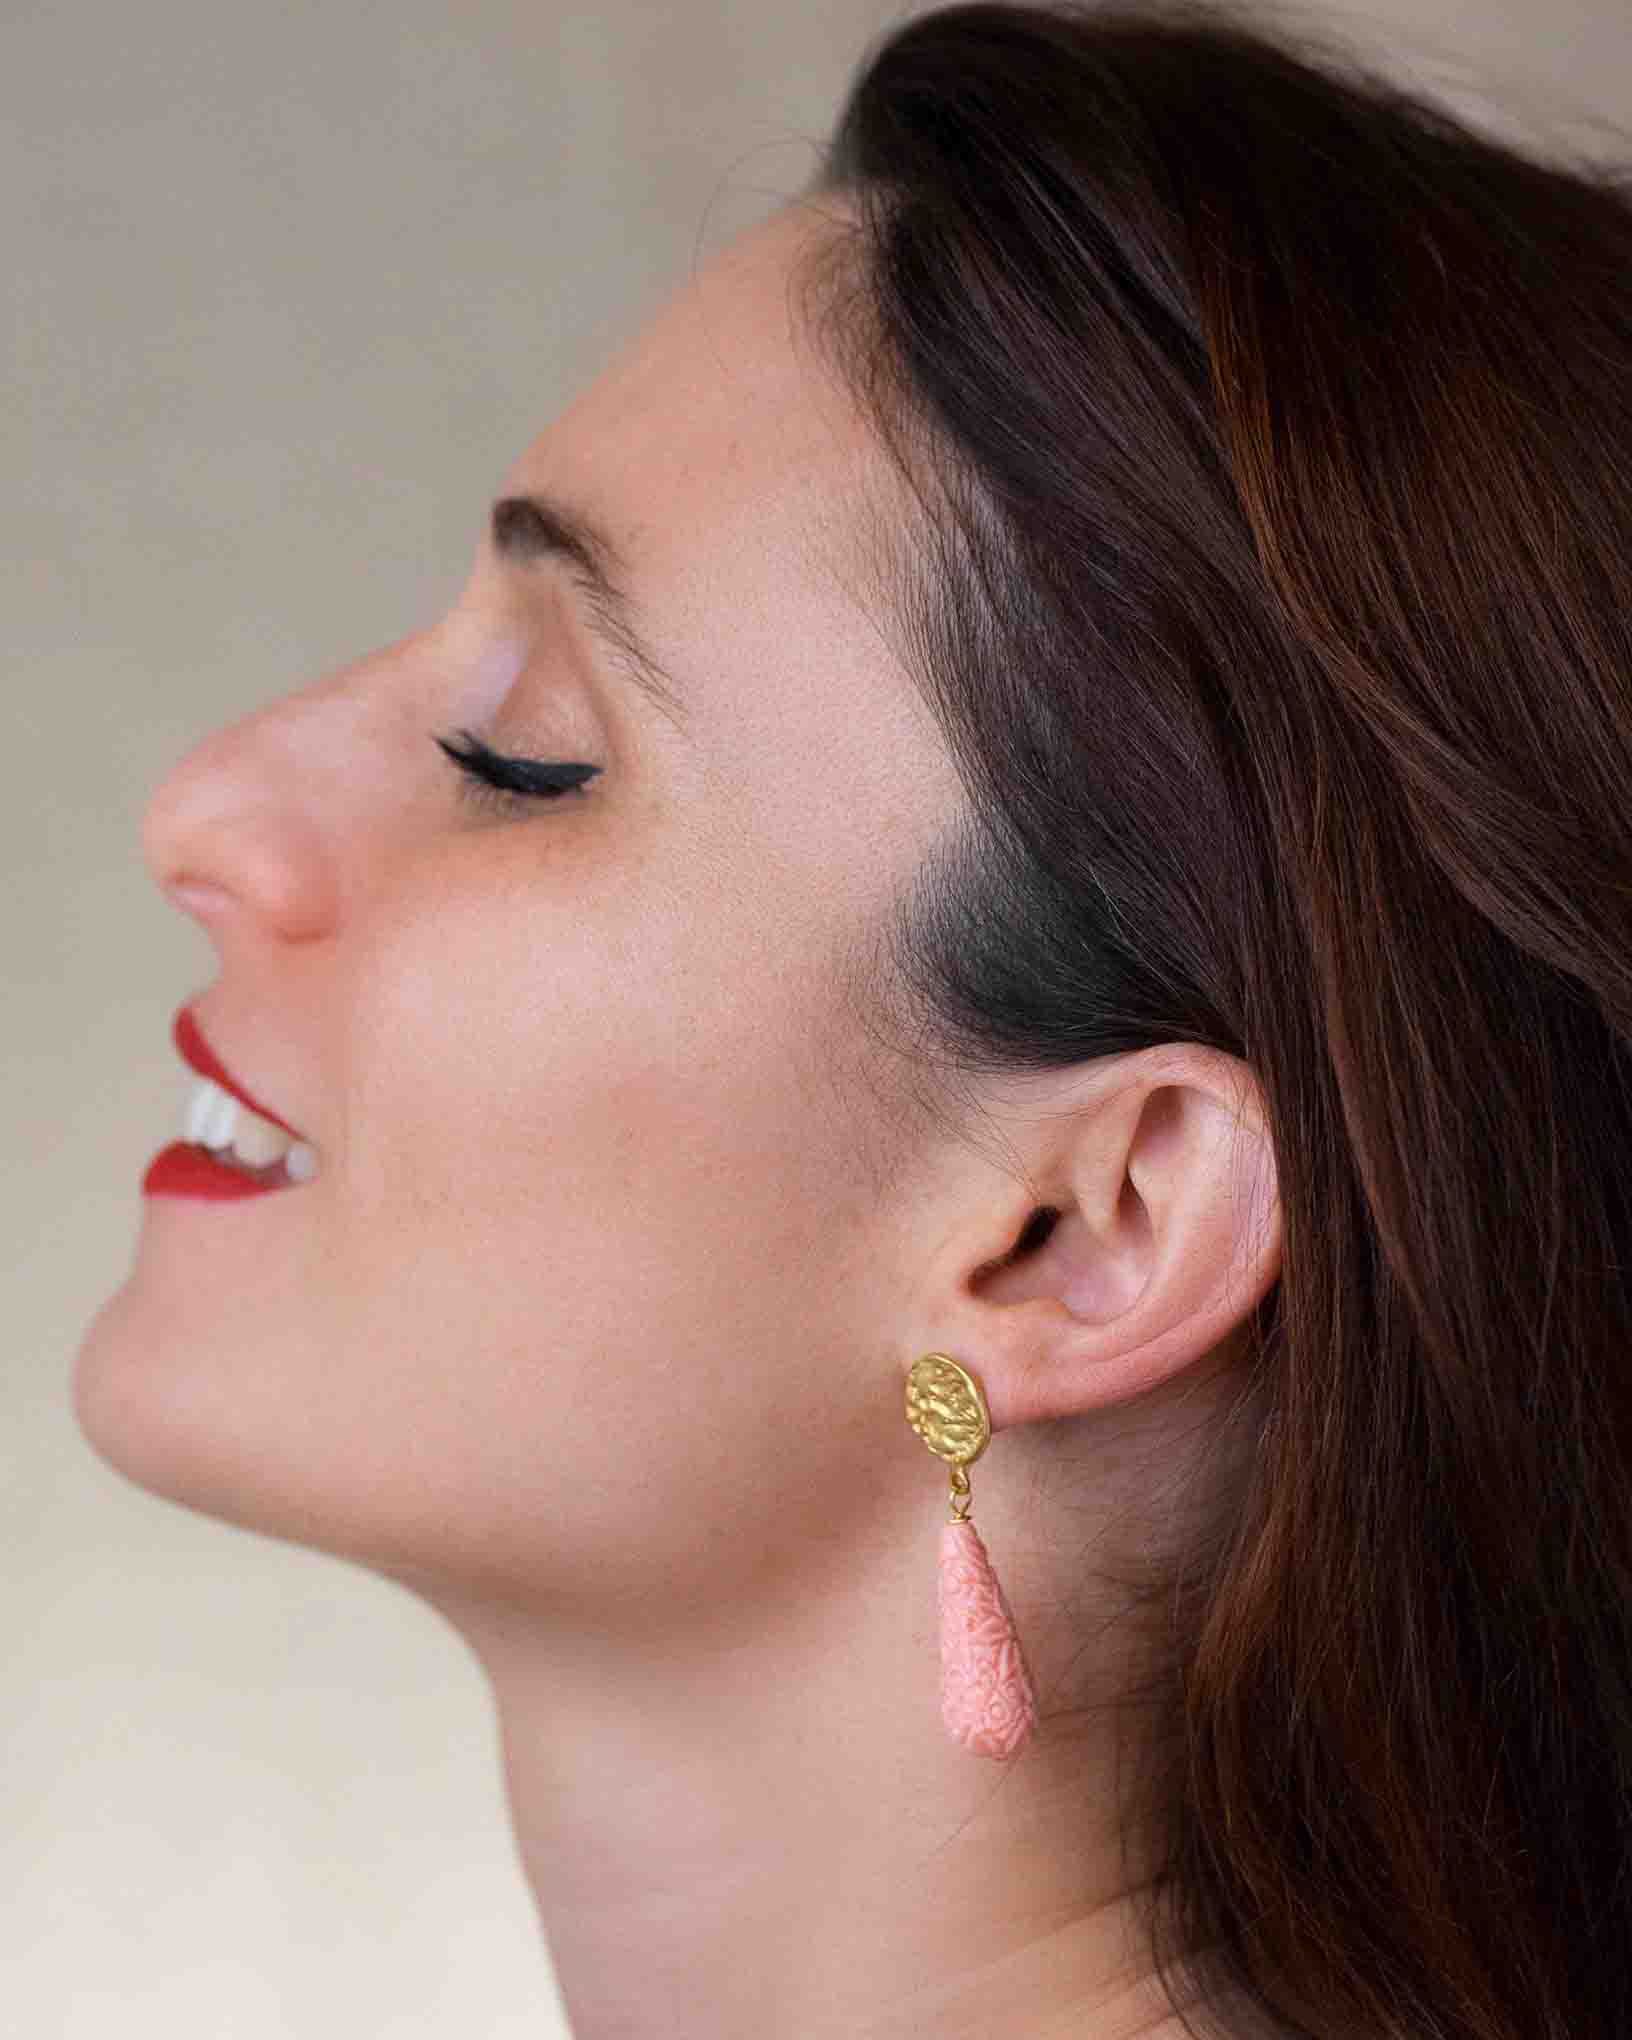 Ohrring Donna Giulietta aus der Kollektion Donna di Classe von Donna Rachele Jewelry